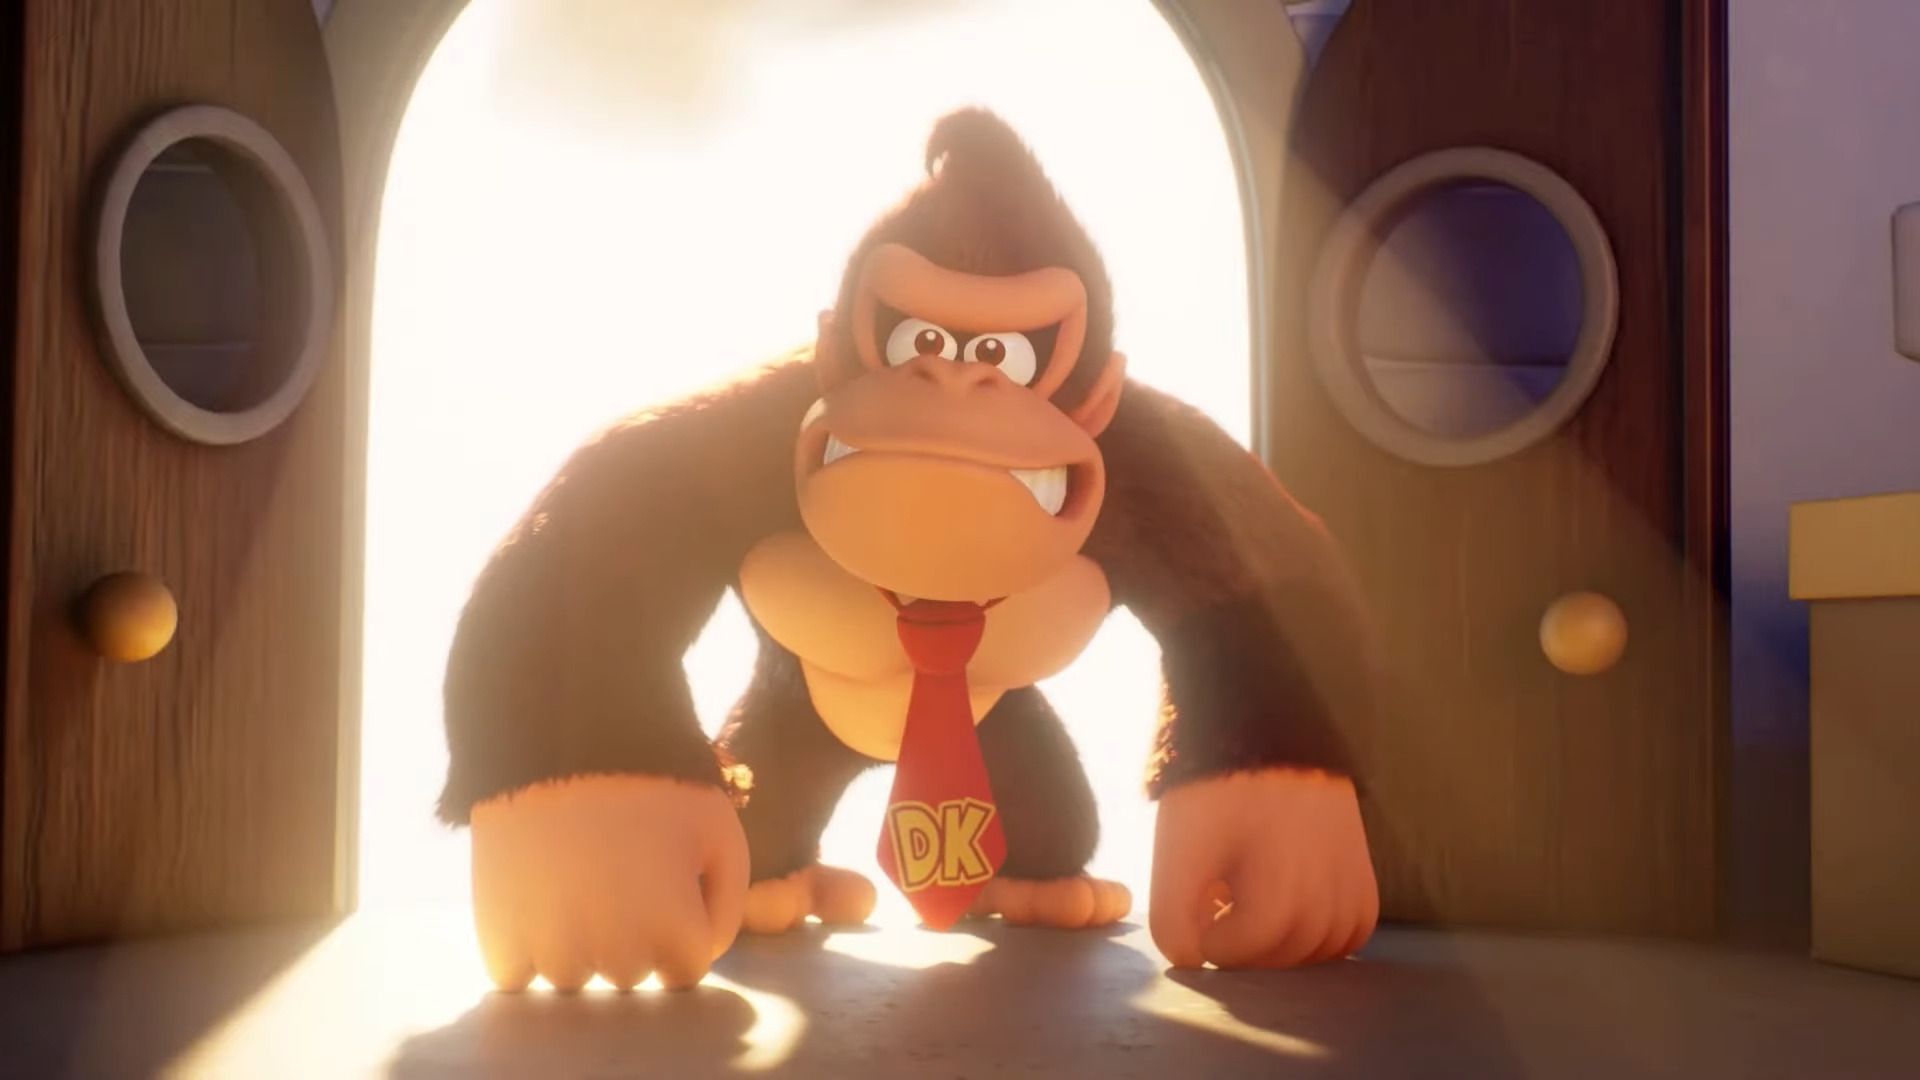 #Prototyp stand schon: Donkey Kong sollte ein 3D-Spiel erhalten, doch daran scheiterte das Projekt